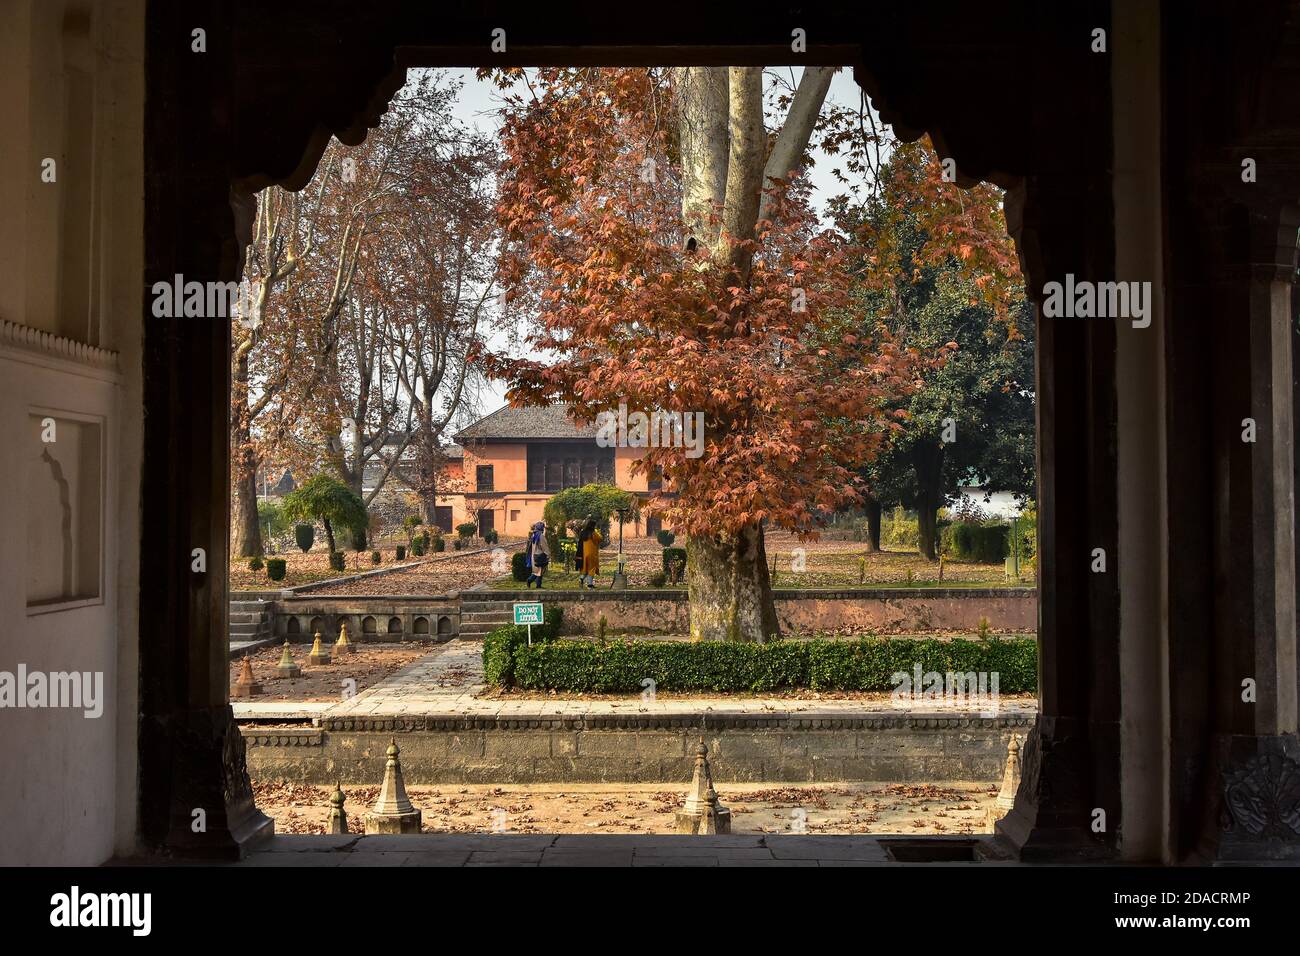 Les visiteurs marchent le long du jardin par un jour d'automne.l'automne,  connu localement sous le nom de Harud, une saison de récolte au Cachemire  avec des arbres changeant de couleurs tandis que